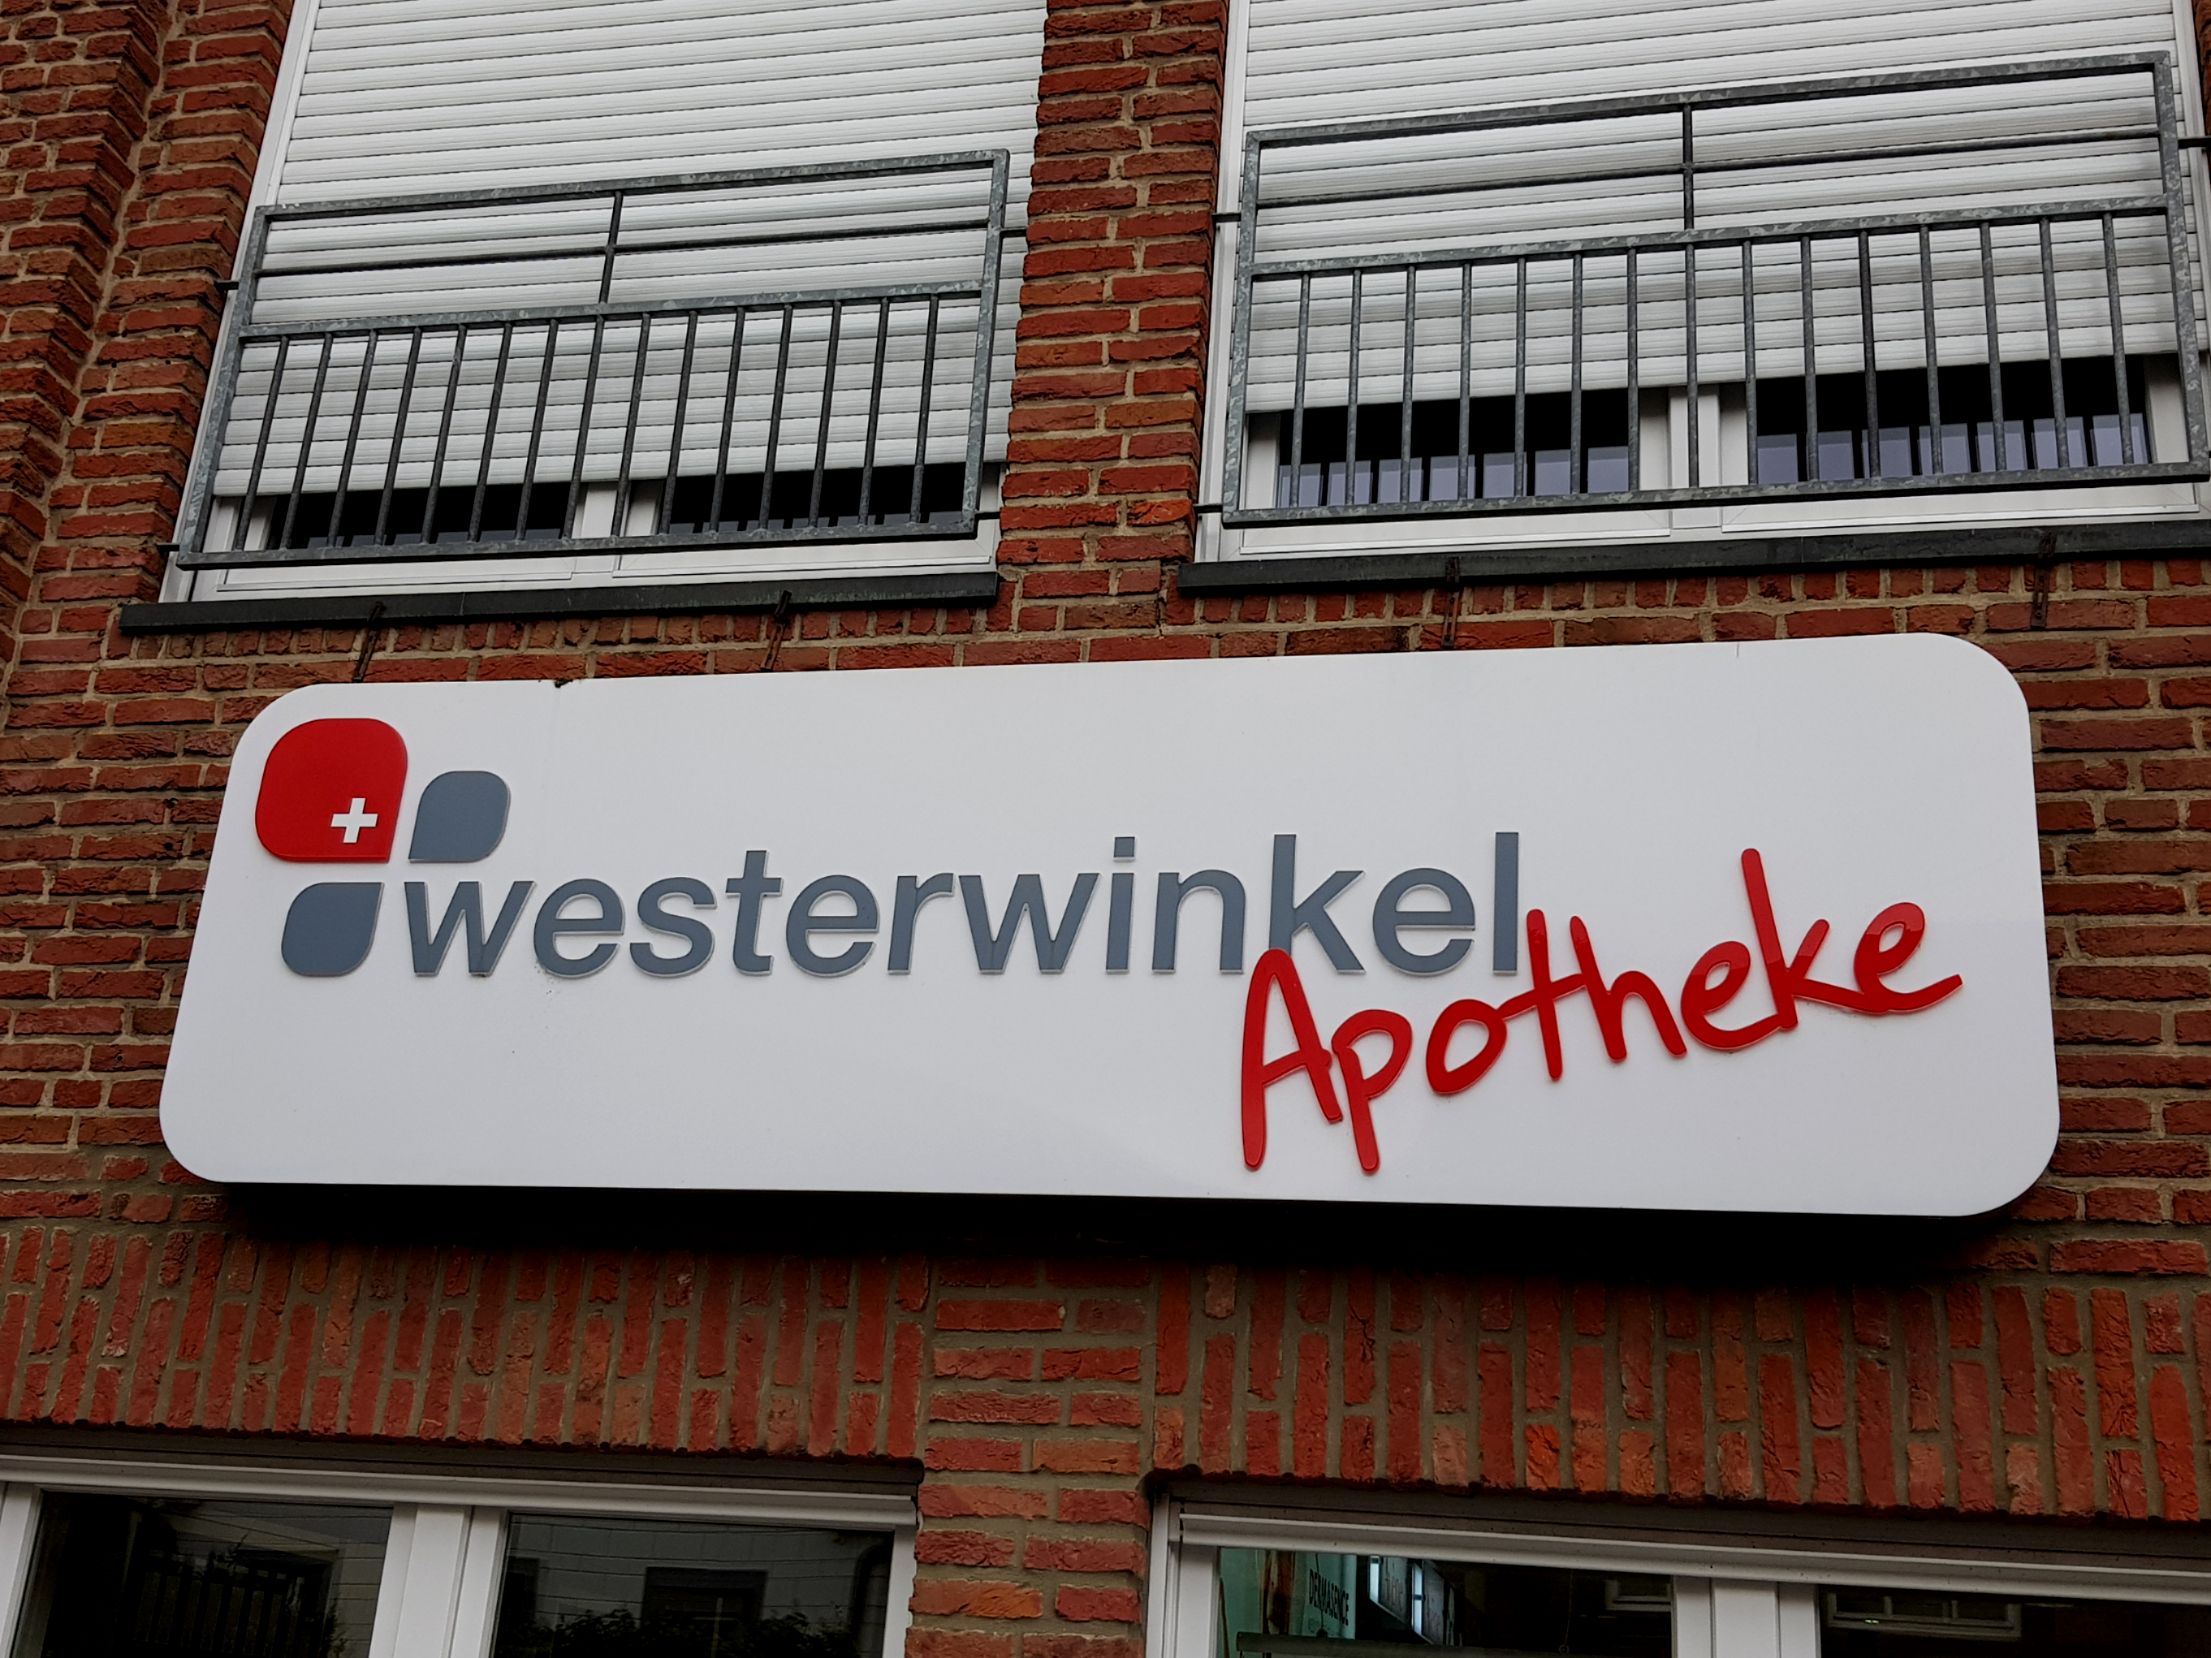 Westerwinkel Apotheke